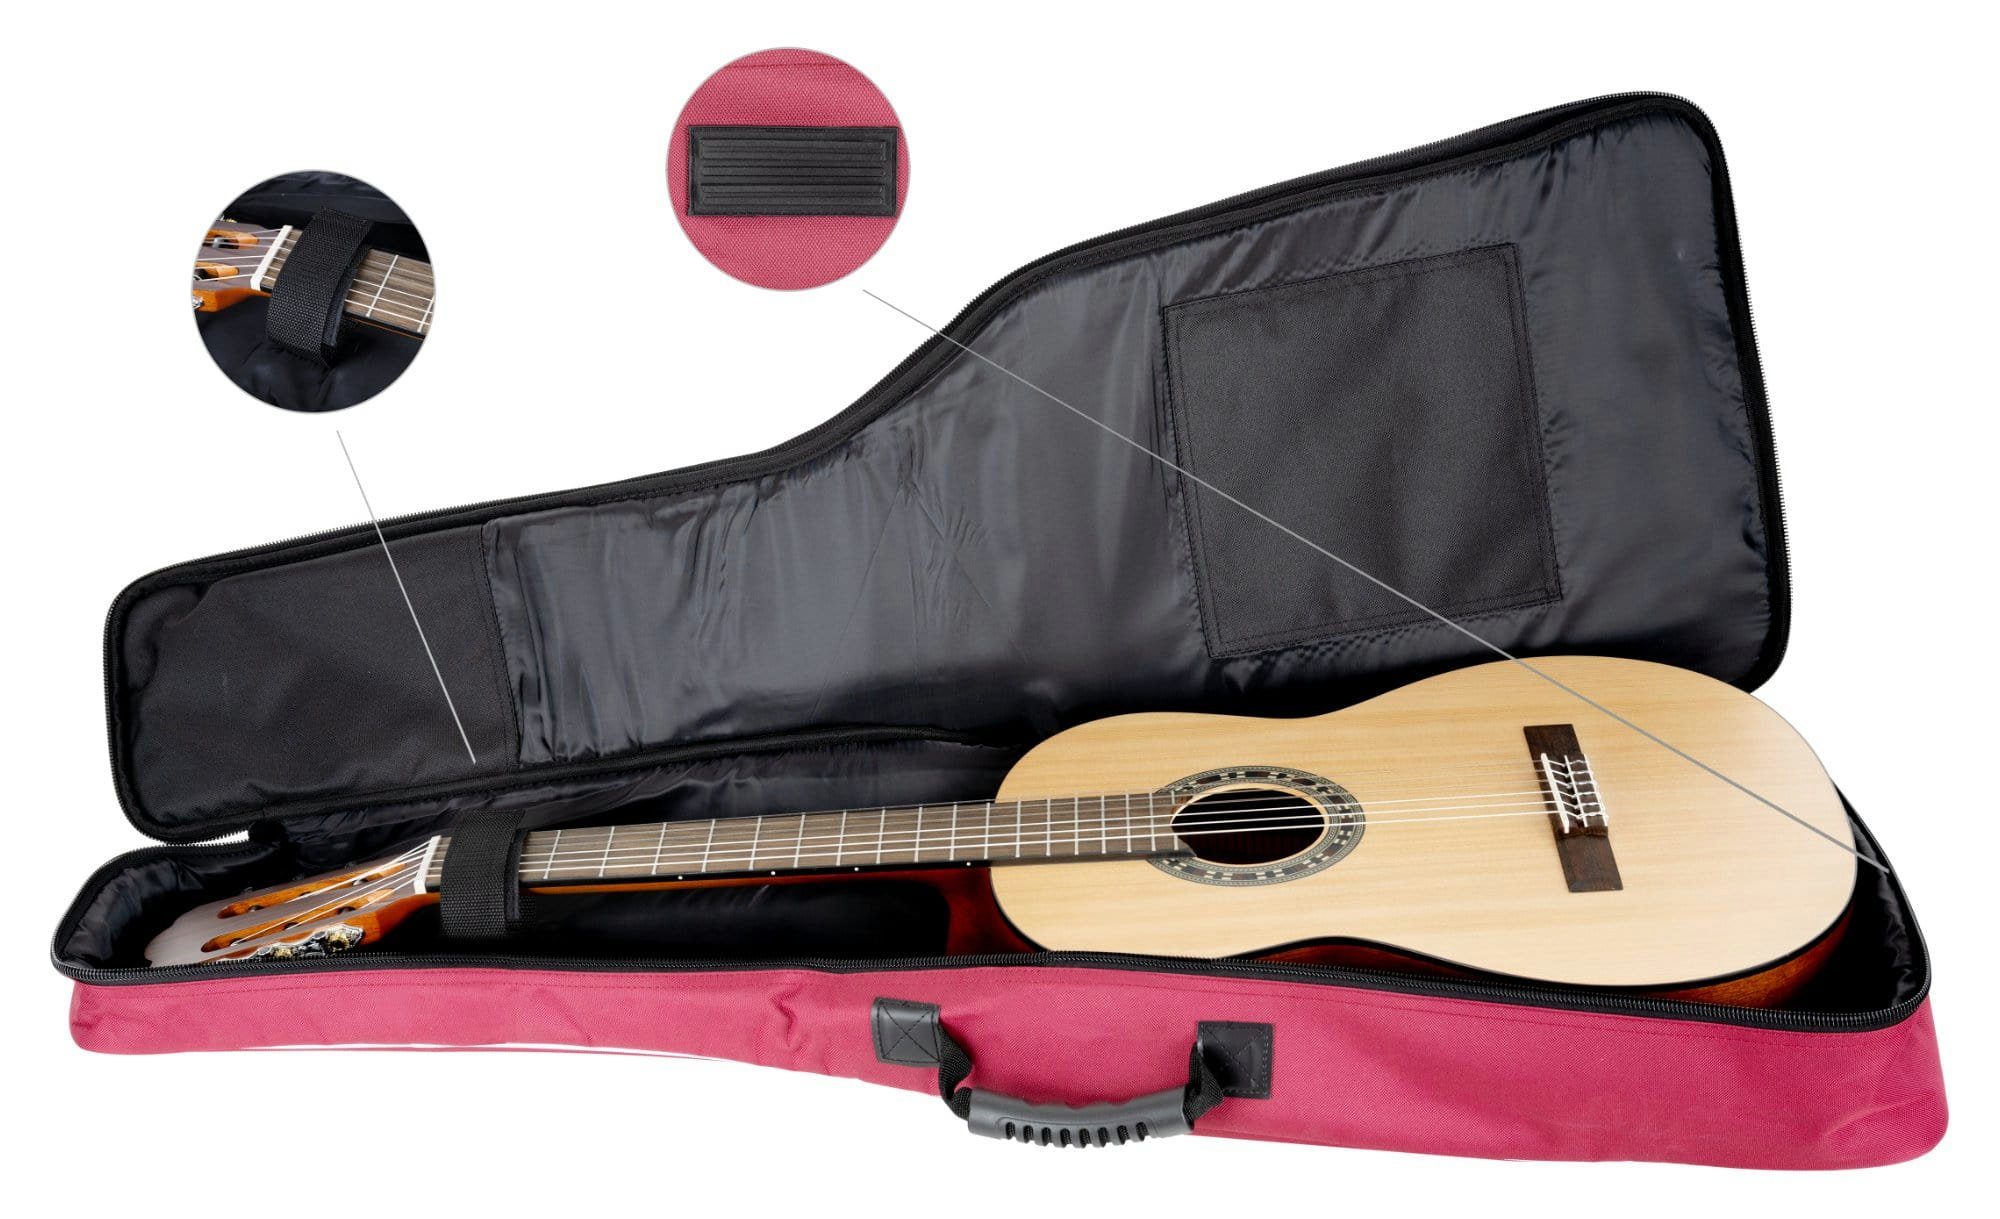 Rocktile Gitarrentasche Klassik-Gitarrentasche weicher Ergonomisch (Gigbag geformter Noten/Zubehör), Fronttaschen für Komfort-Griff mit Weinrot inkl. 1/2-Größe Polsterung, 2